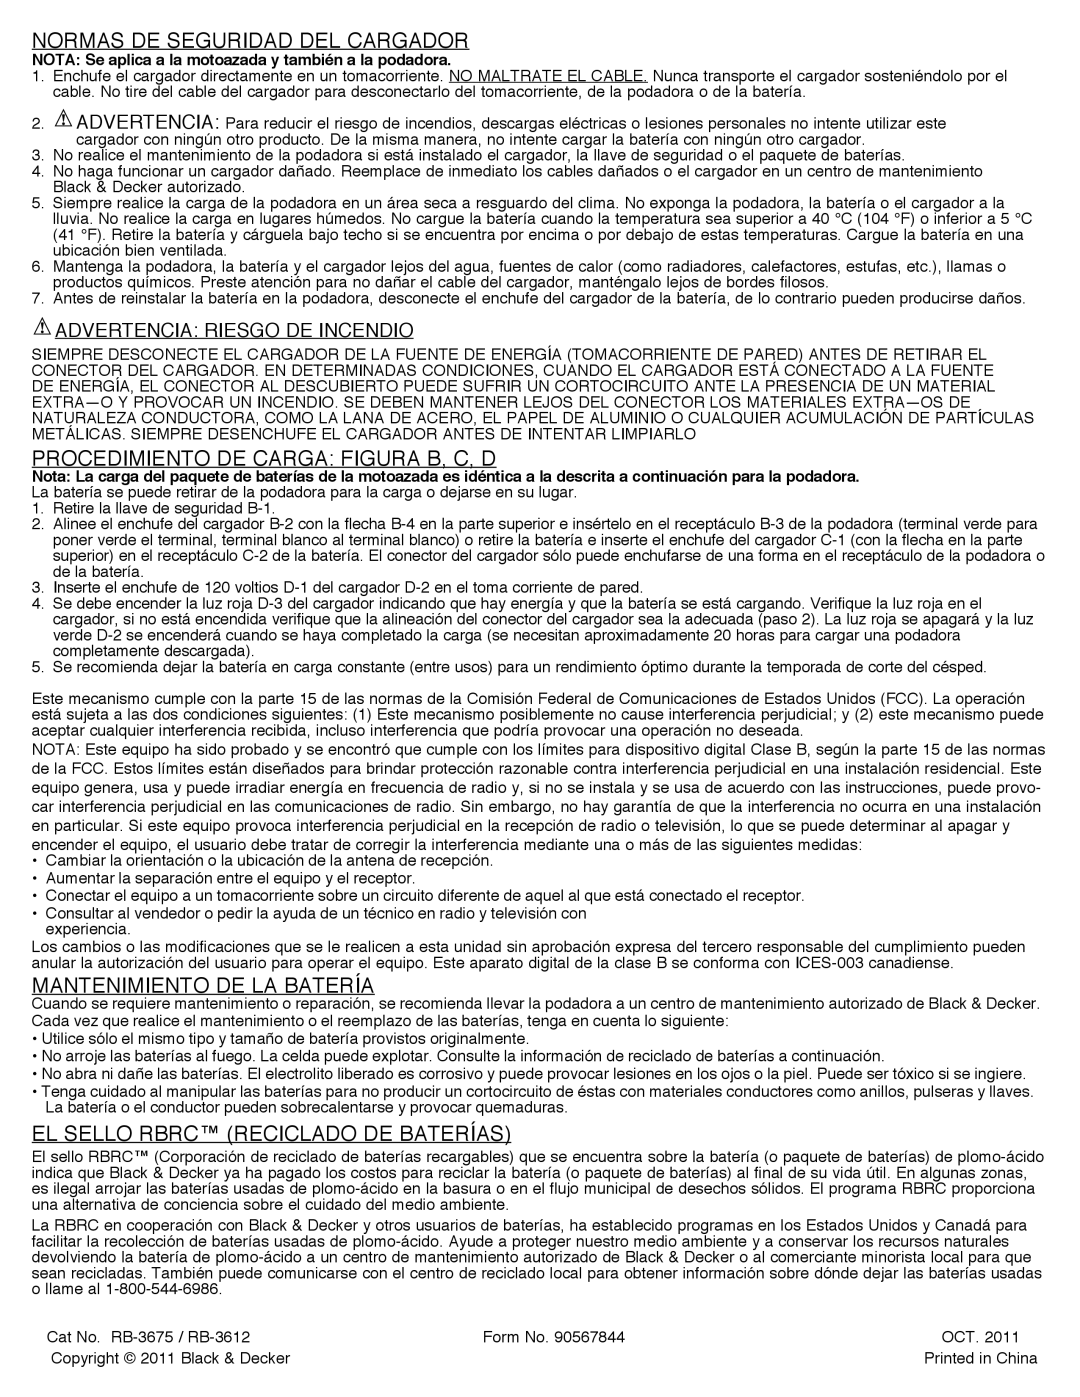 Black & Decker RB-3675, RB-3612 manual Normas De Seguridad Del Cargador, Procedimiento De Carga Figura B, C, D 